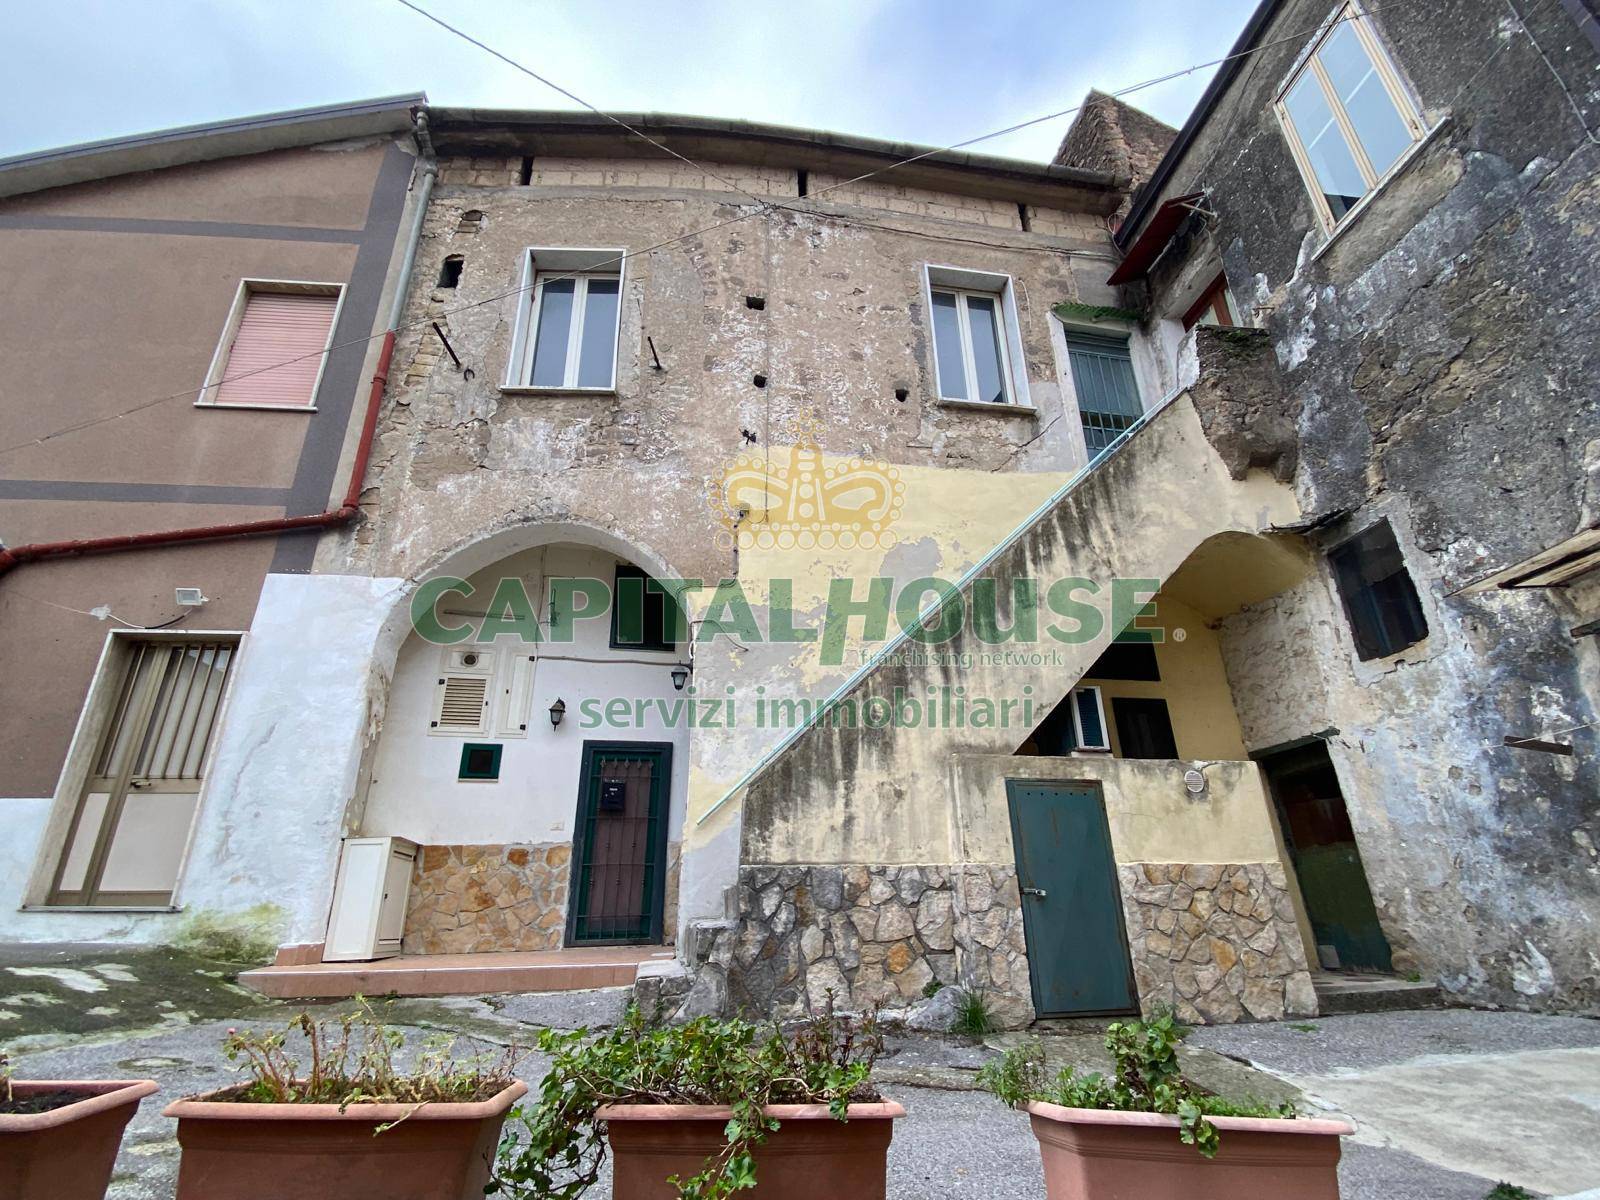 Appartamento in vendita a Mercato San Severino, 2 locali, prezzo € 19.000 | PortaleAgenzieImmobiliari.it